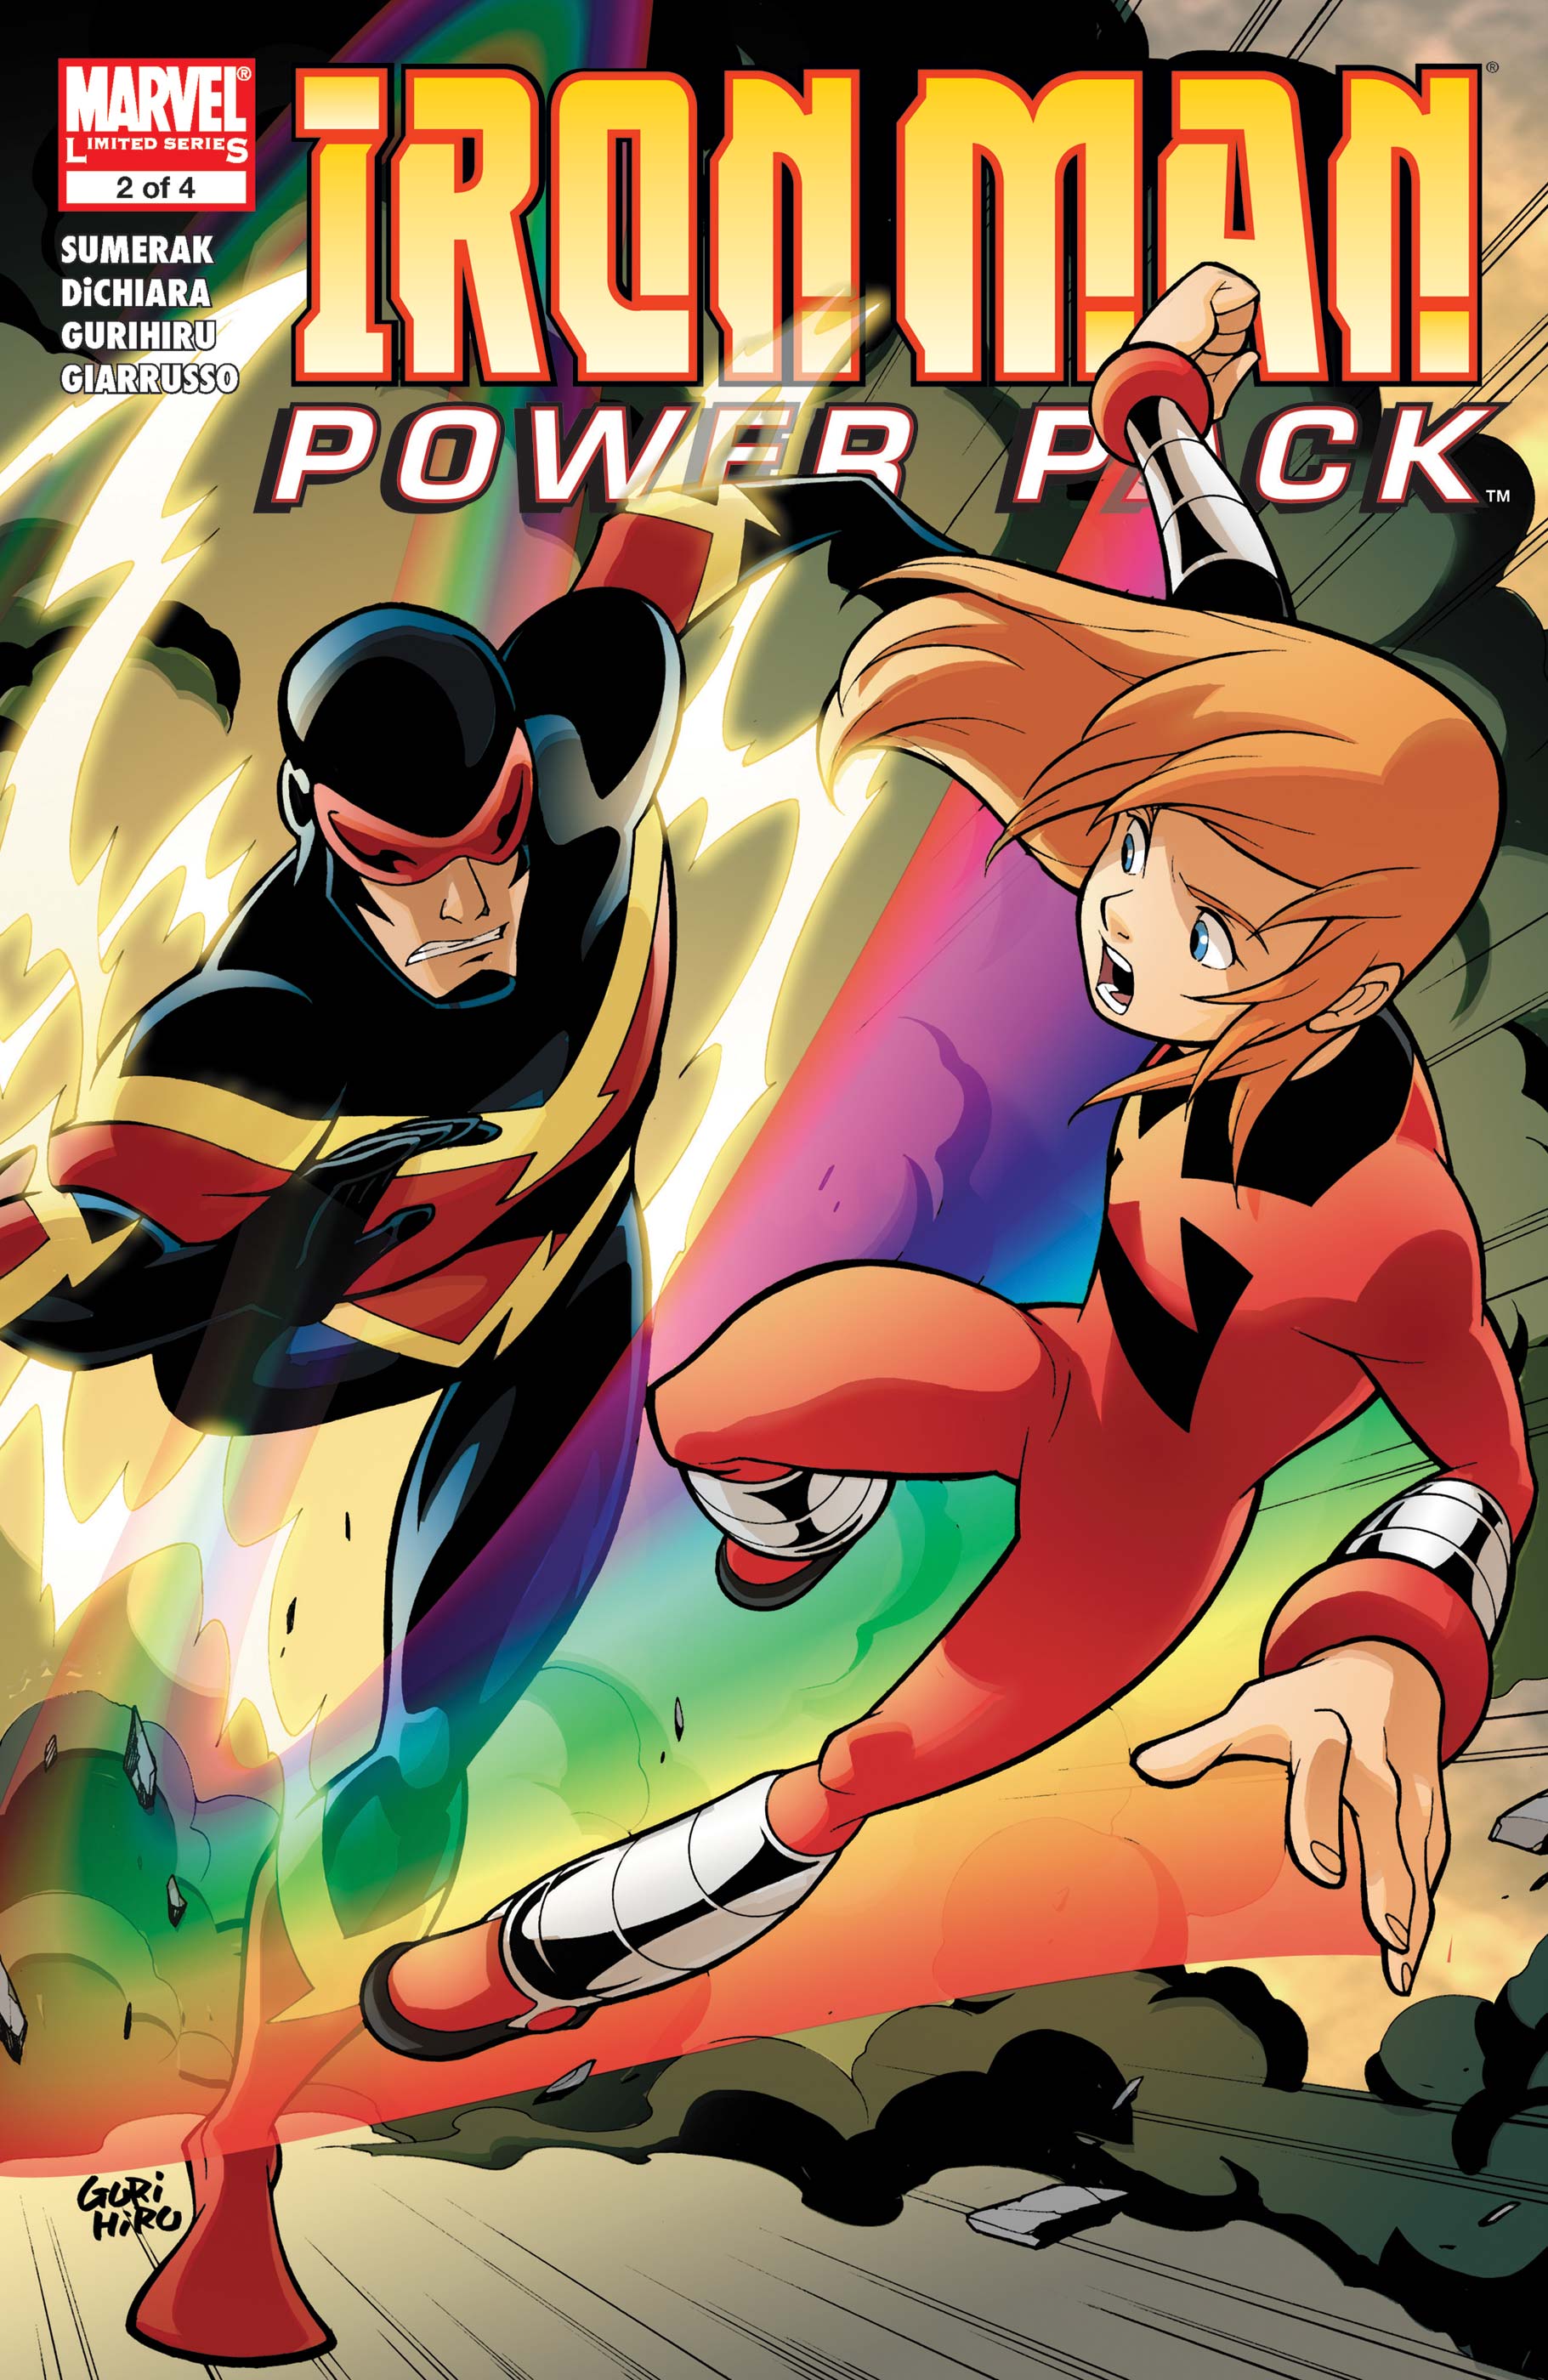 Power pack комикс. Джули Пауэр Марвел. POWERPACK комиксы. Lightspeed Marvel. Блок питания комиксы.